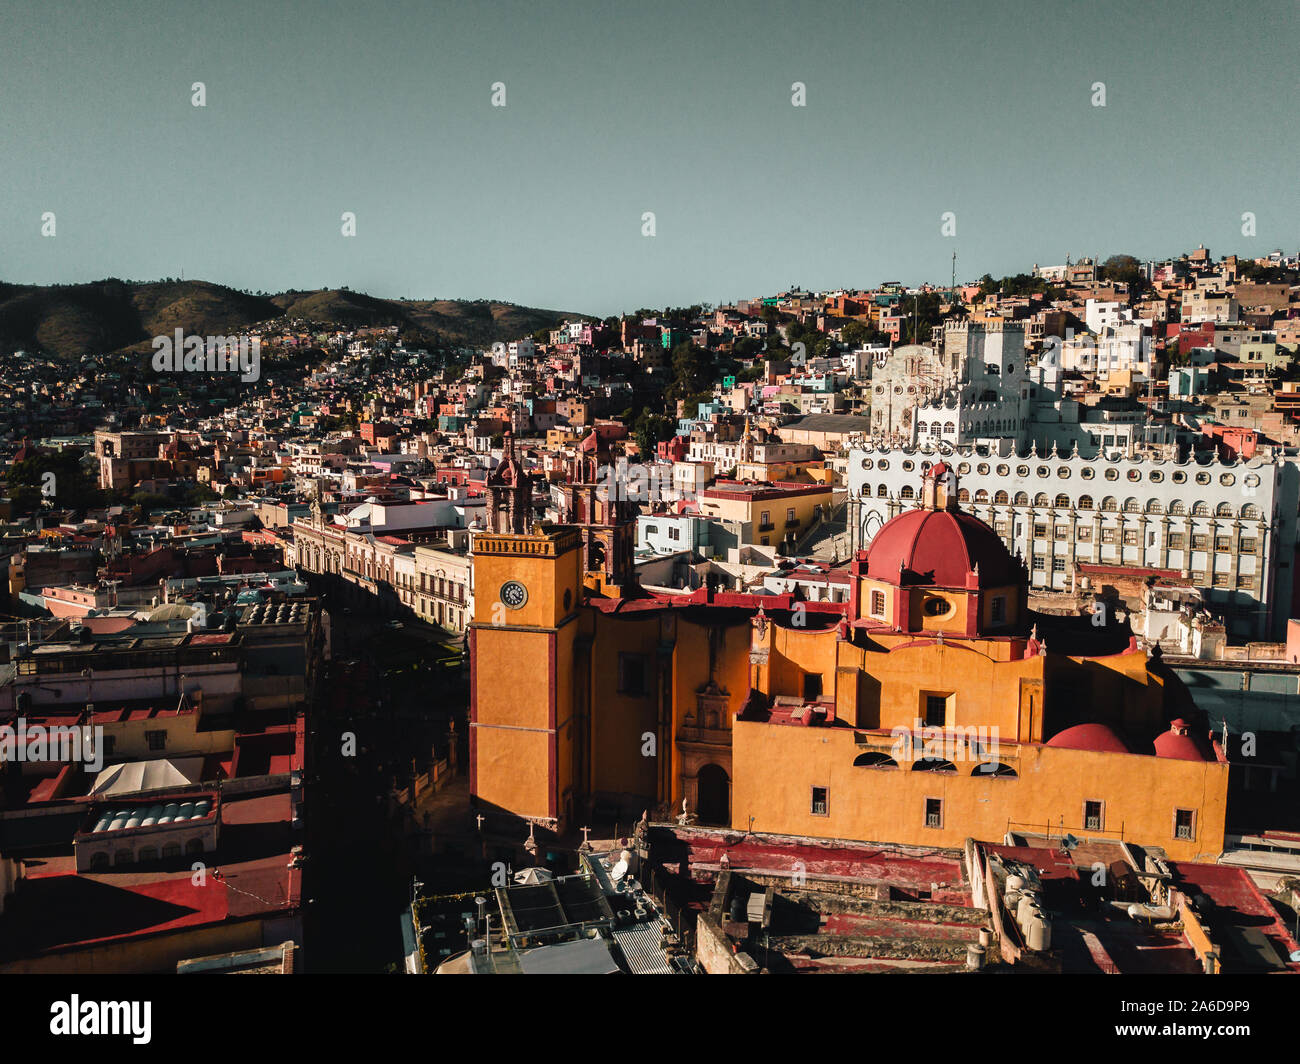 Riprese aeree del centro cittadino di Guanajuato, il centro sinistra è una delle molte chiese che può essere visto sparsi per questa città coloniale. Foto Stock